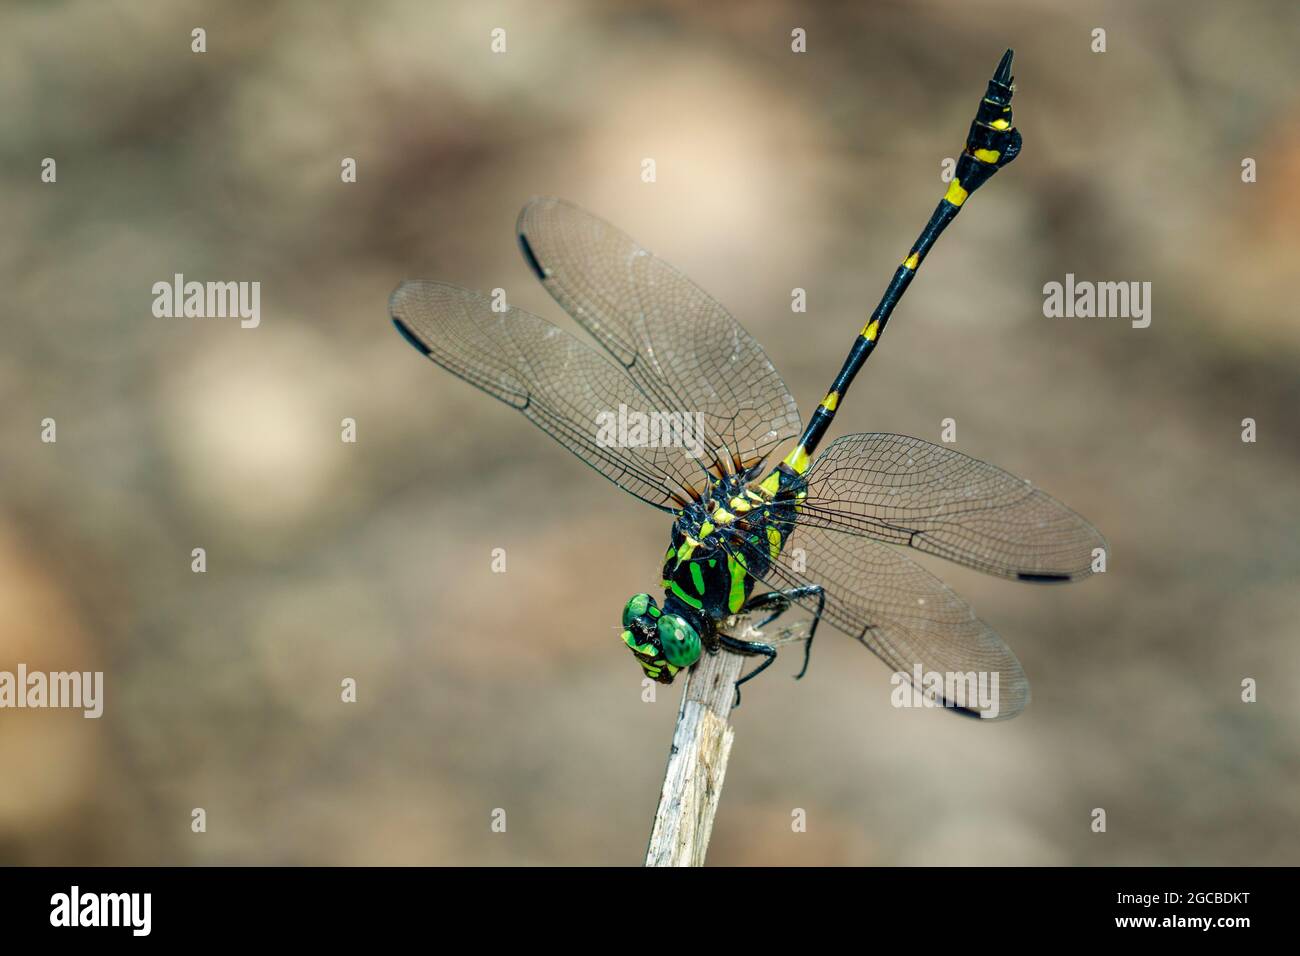 Immagine di gomphidae libellula (Ictinogomphus Decoratus) su rami secchi. Insetto. Animale Foto Stock